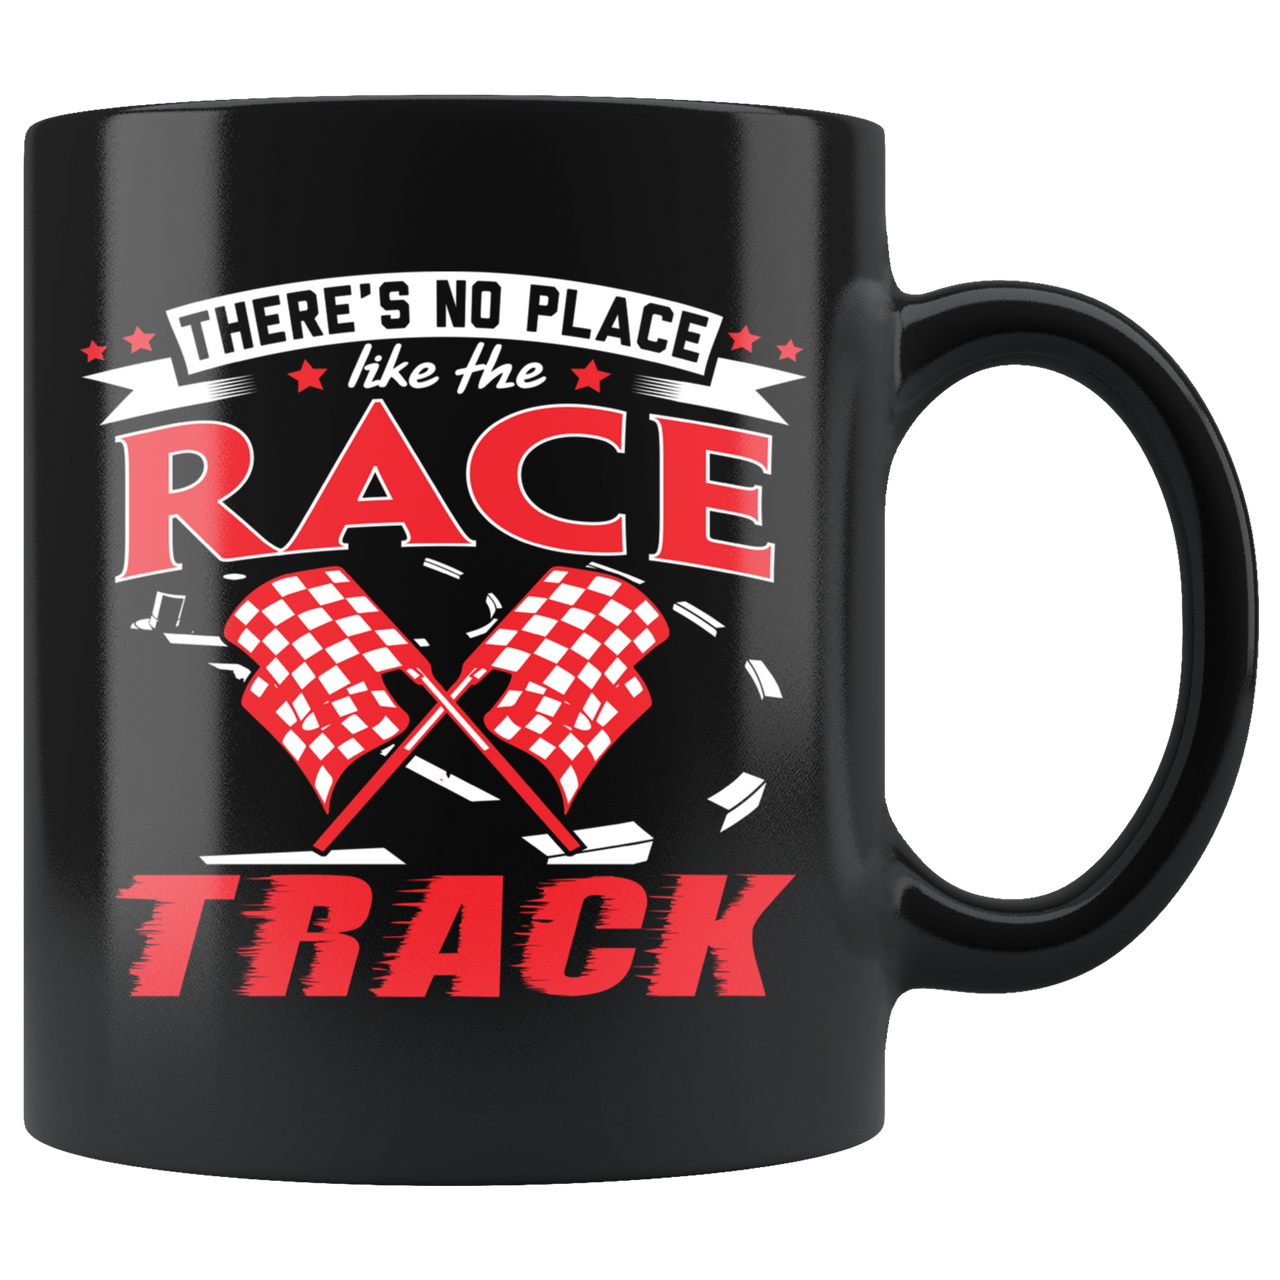 There's No Place Like The Race Track Mug!